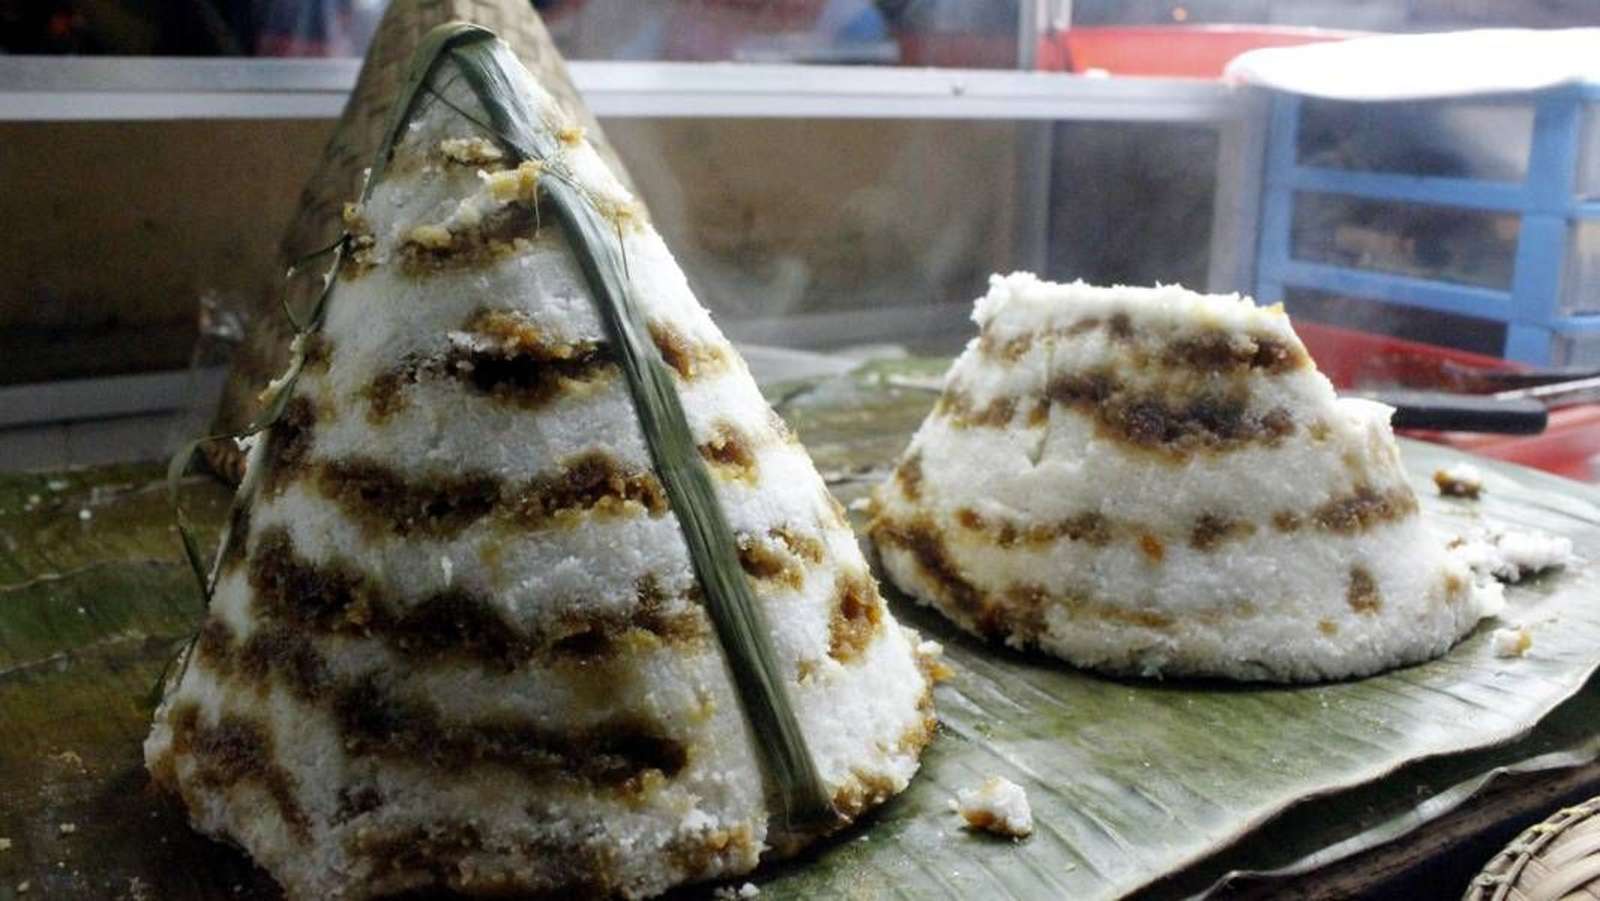 Awug солодкий рисовий пиріг онлайн пазл